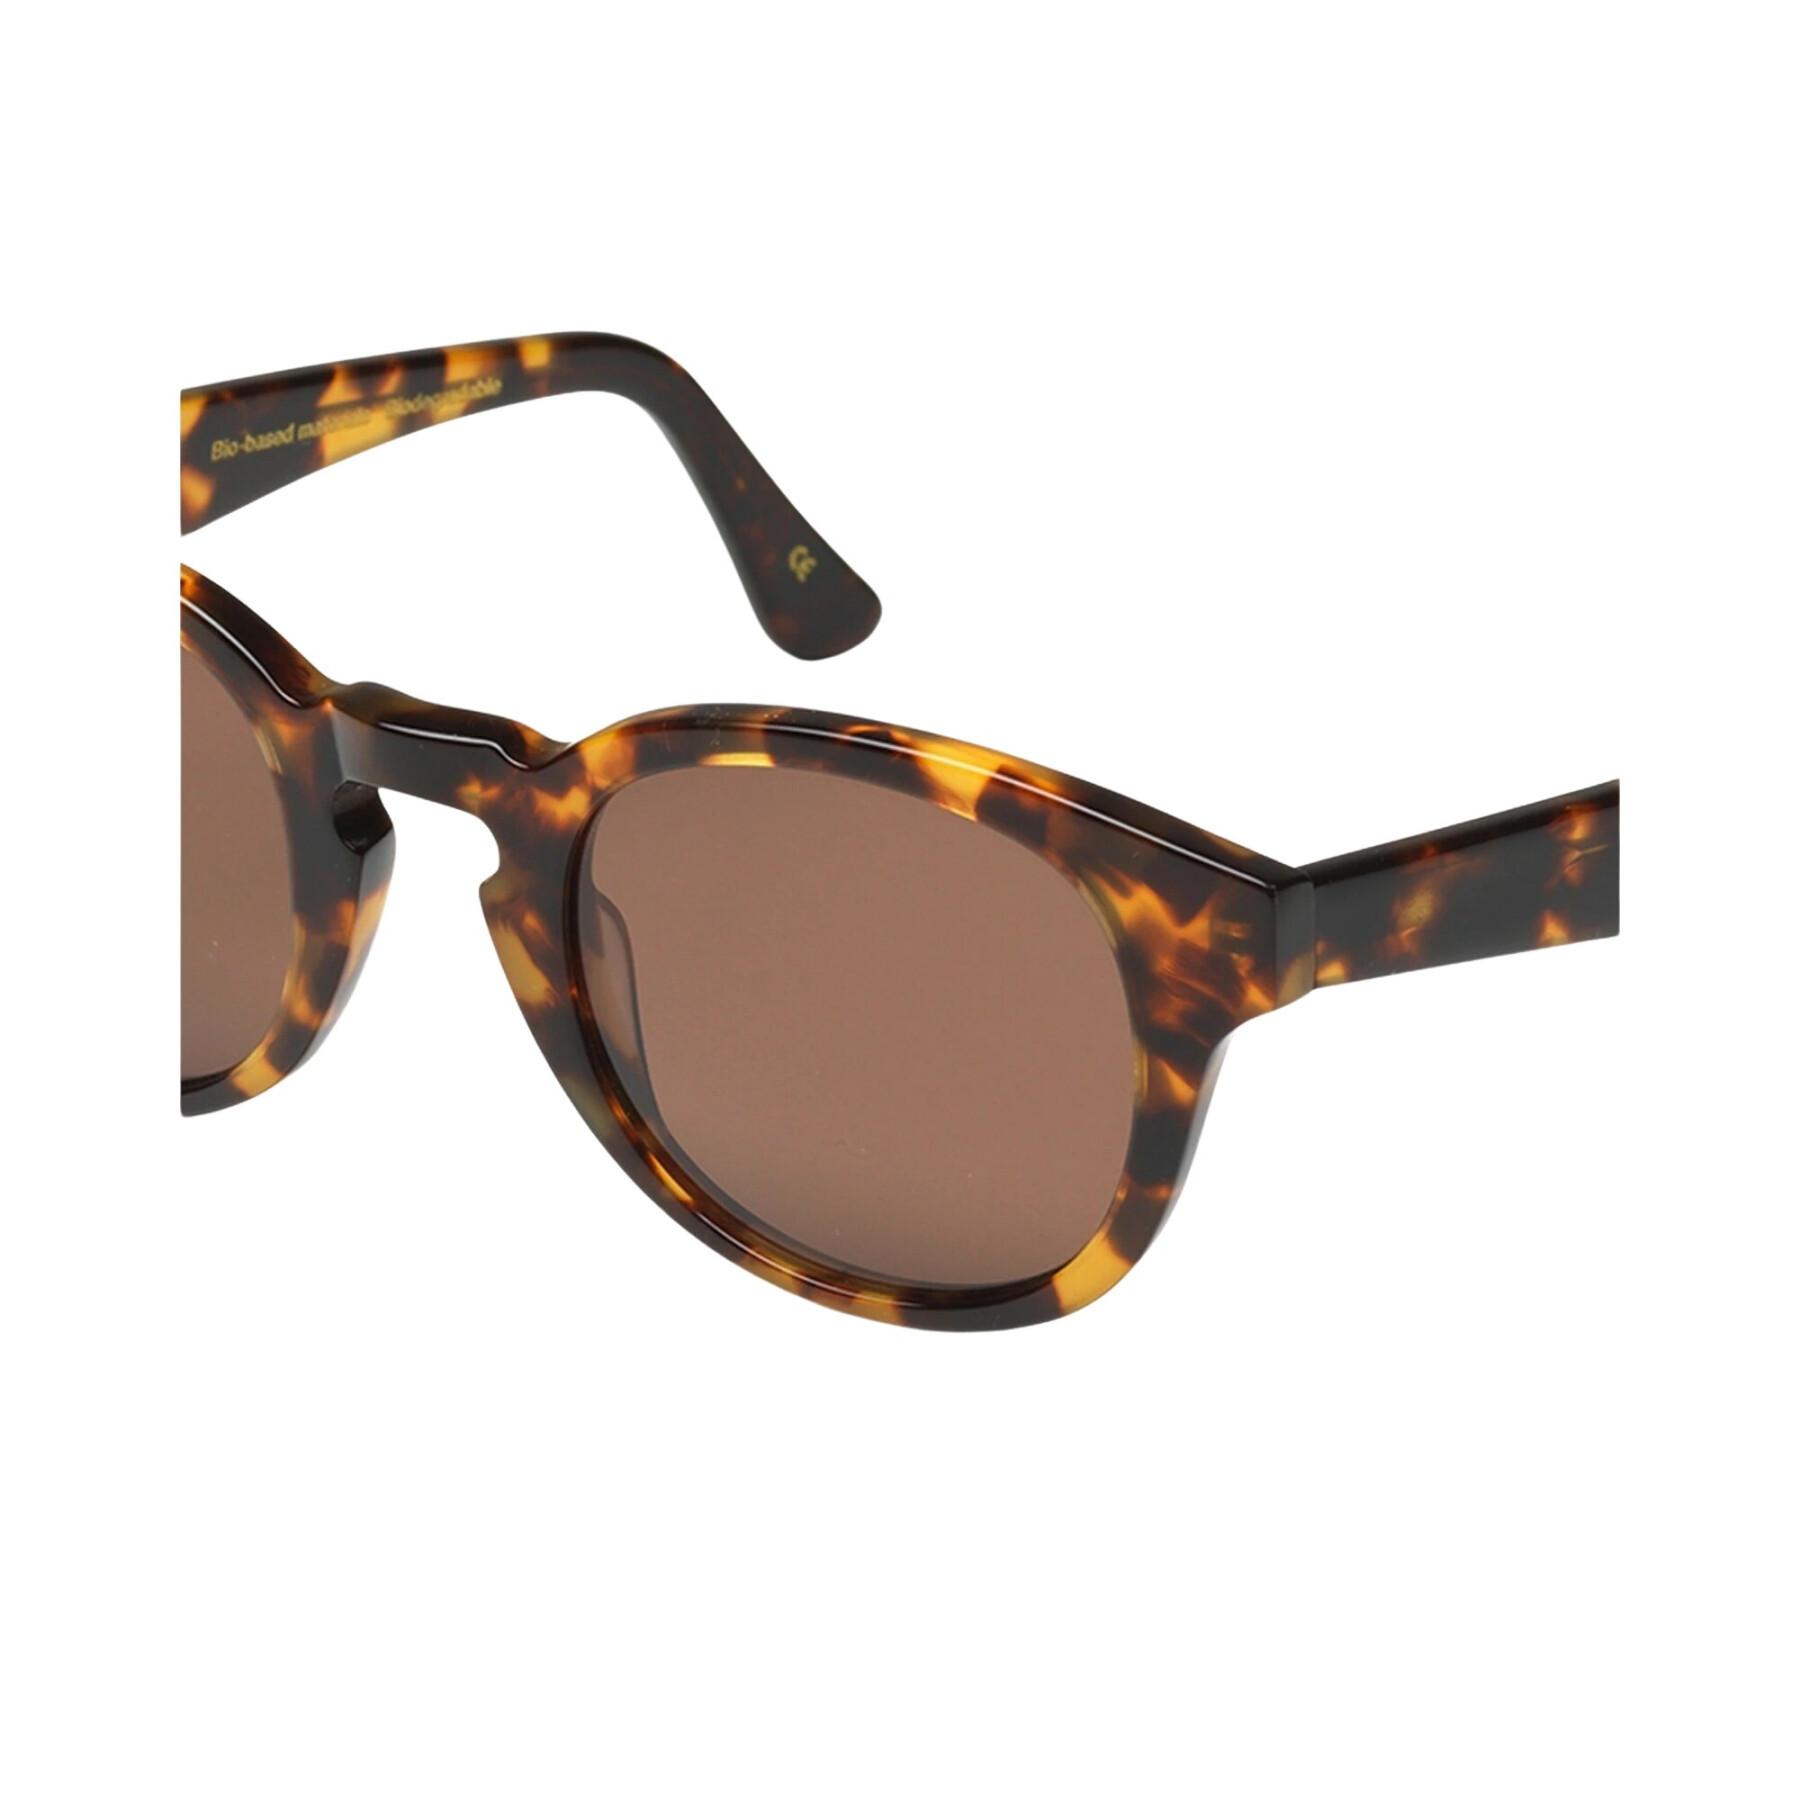 Óculos escuros Colorful Standard 12 classic havana/brown